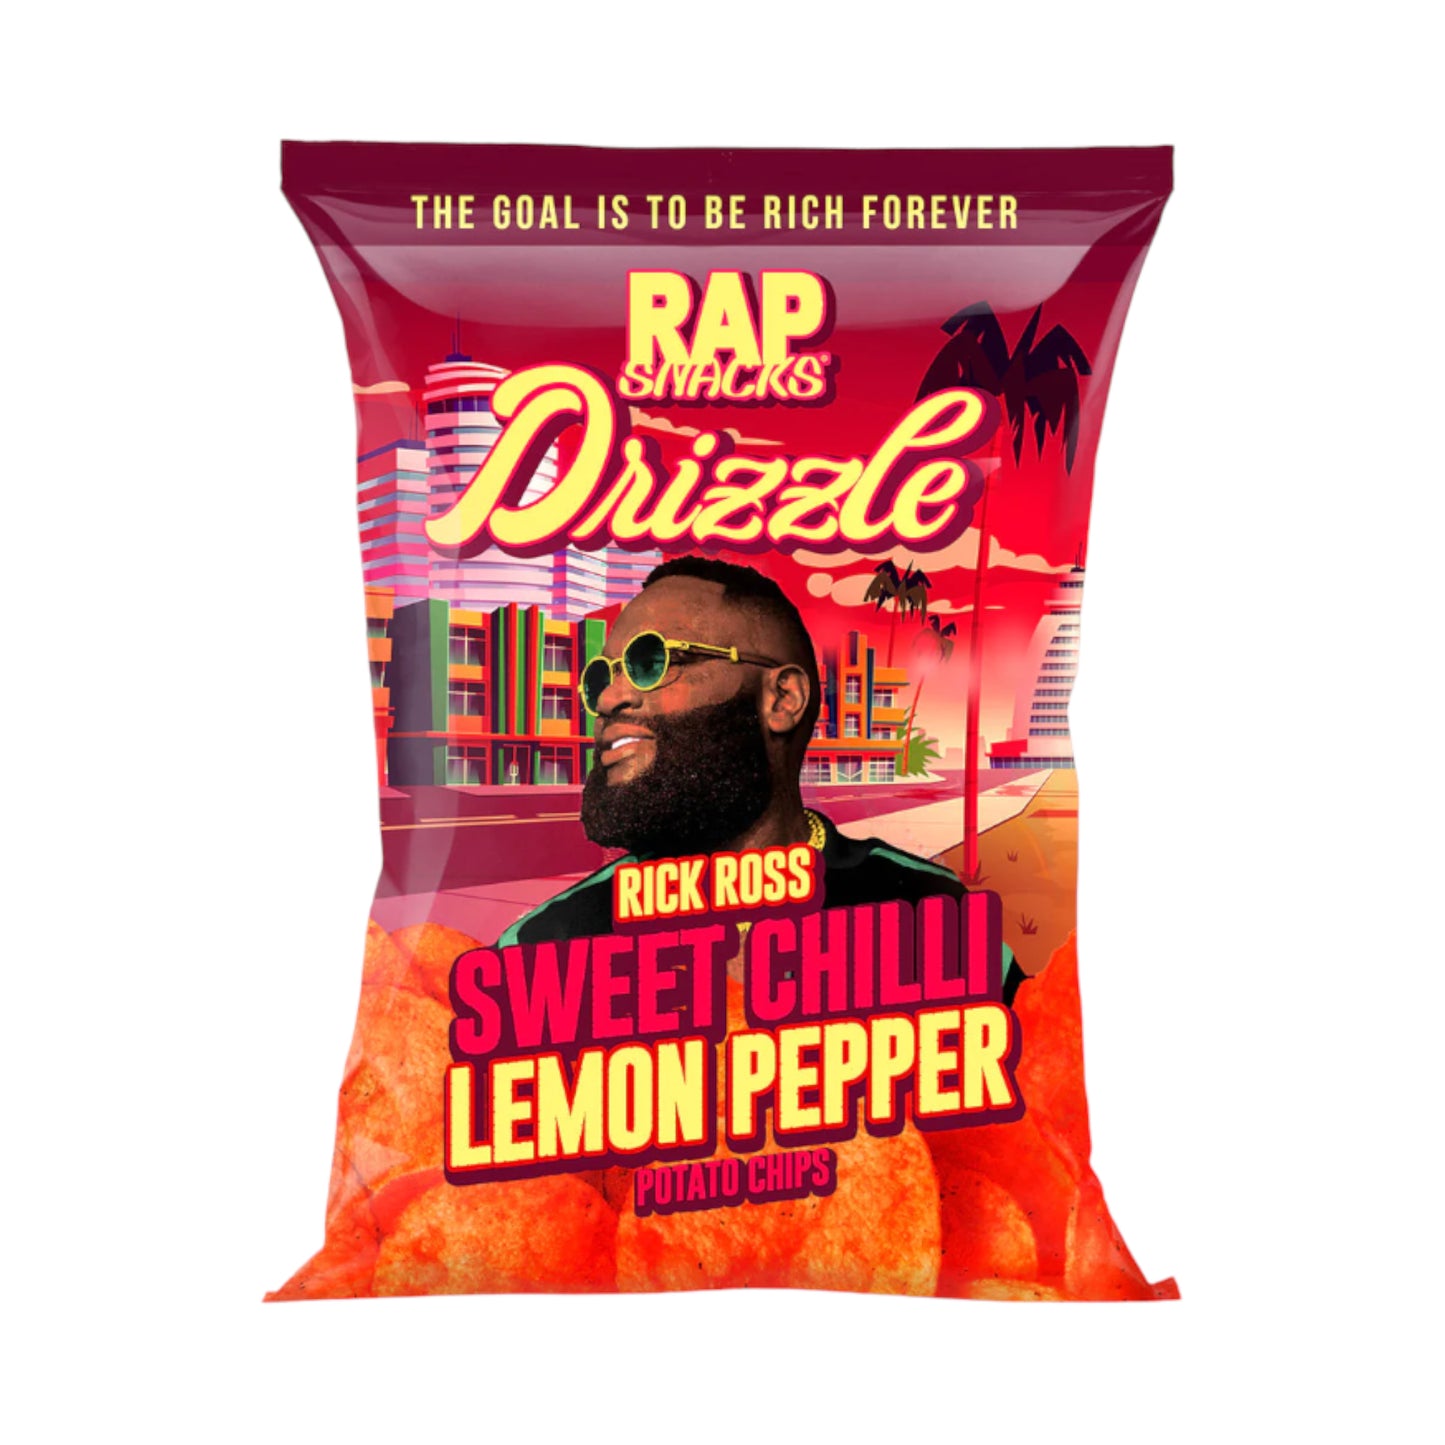 Rap Snacks Rick Ross Sweet Chili Lemon Pepper - 2.5oz (71g)